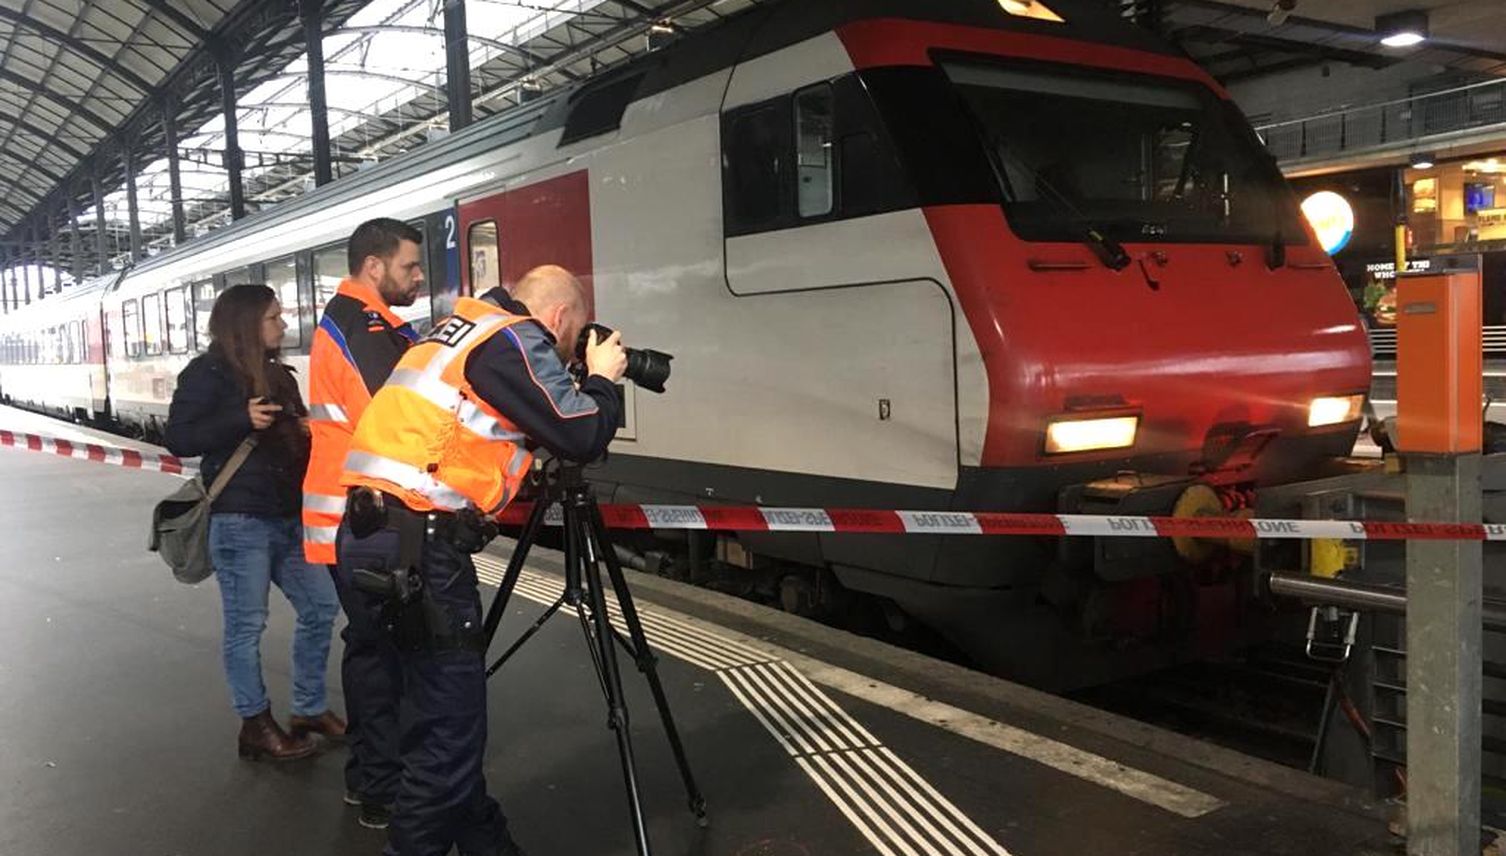 Zug fährt in Prellbock: Zwölf Verletzte im Bahnhof Luzern